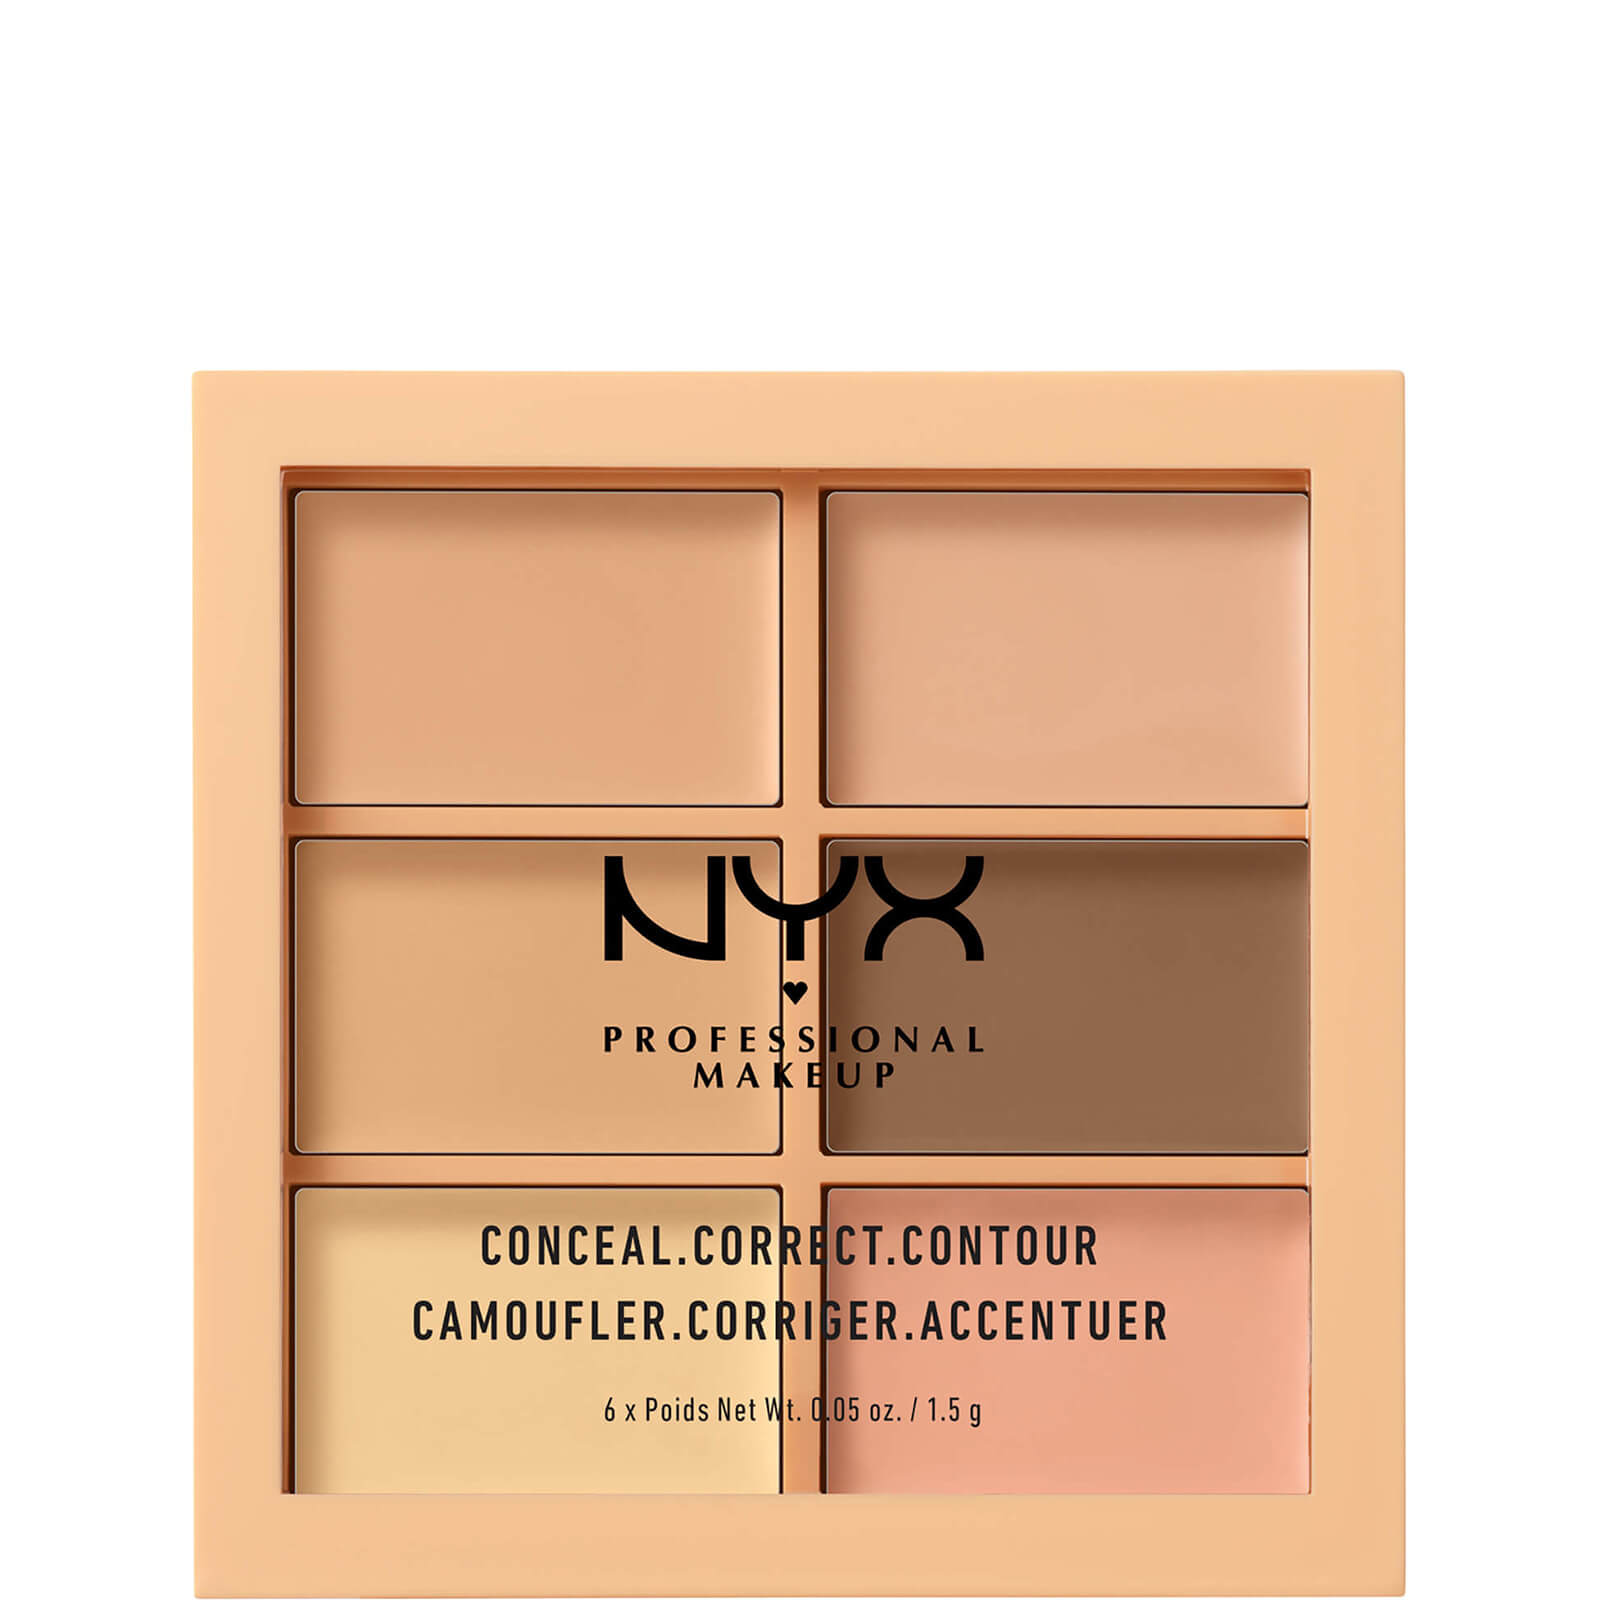 nyx professional makeup 3c palette - conceal, correct, contour - light